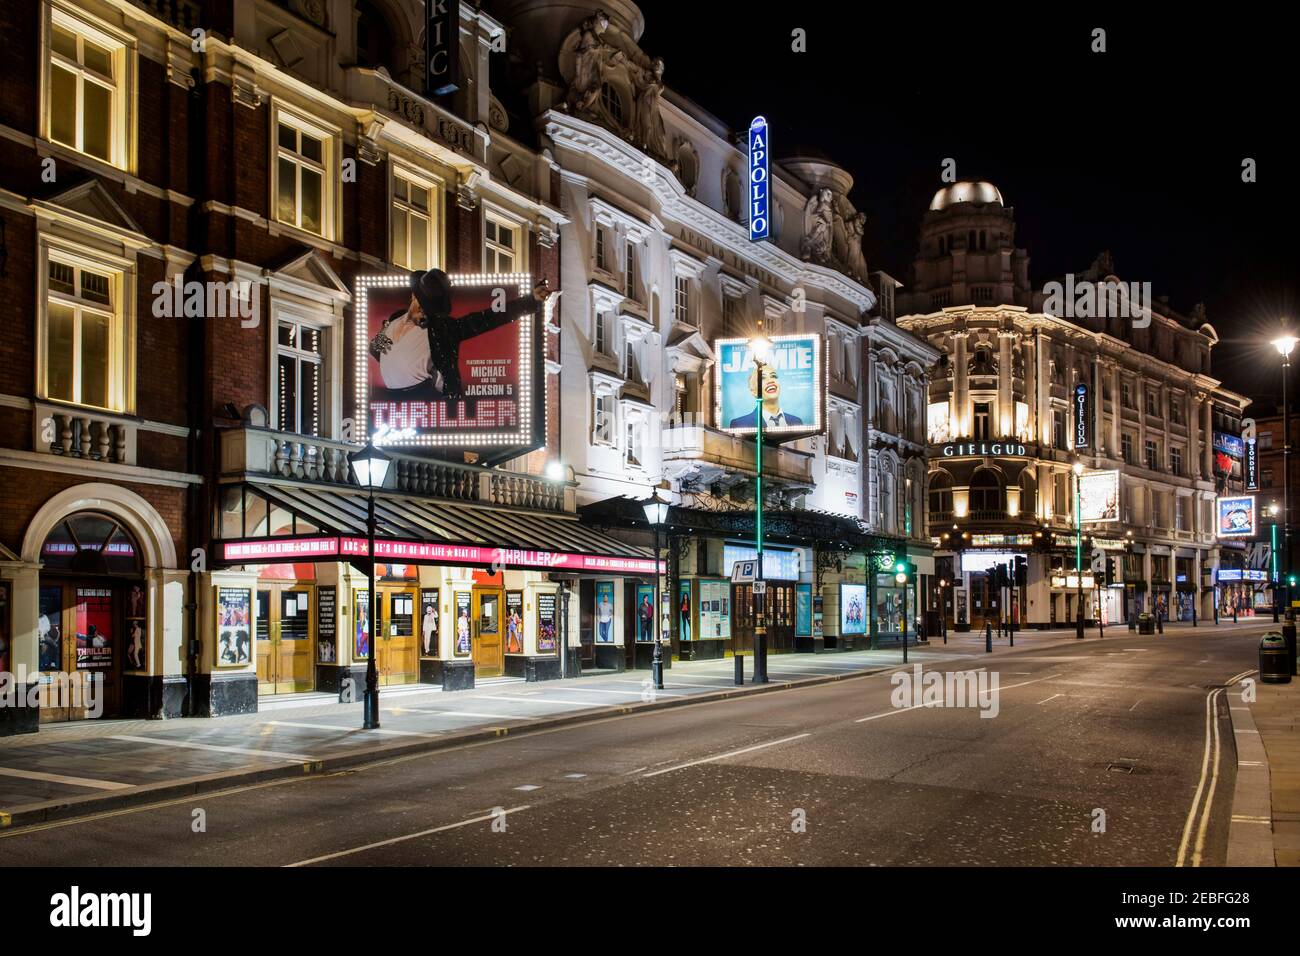 Une vue nocturne d'une avenue Shaftesbury vide, y compris les théâtres West End Lyric, Apollo et Gielgud, tous fermés en raison de la pandémie de Covid-19, et peu susceptibles d'ouvrir bientôt à moins que les directives du gouvernement changent, Londres. Banque D'Images